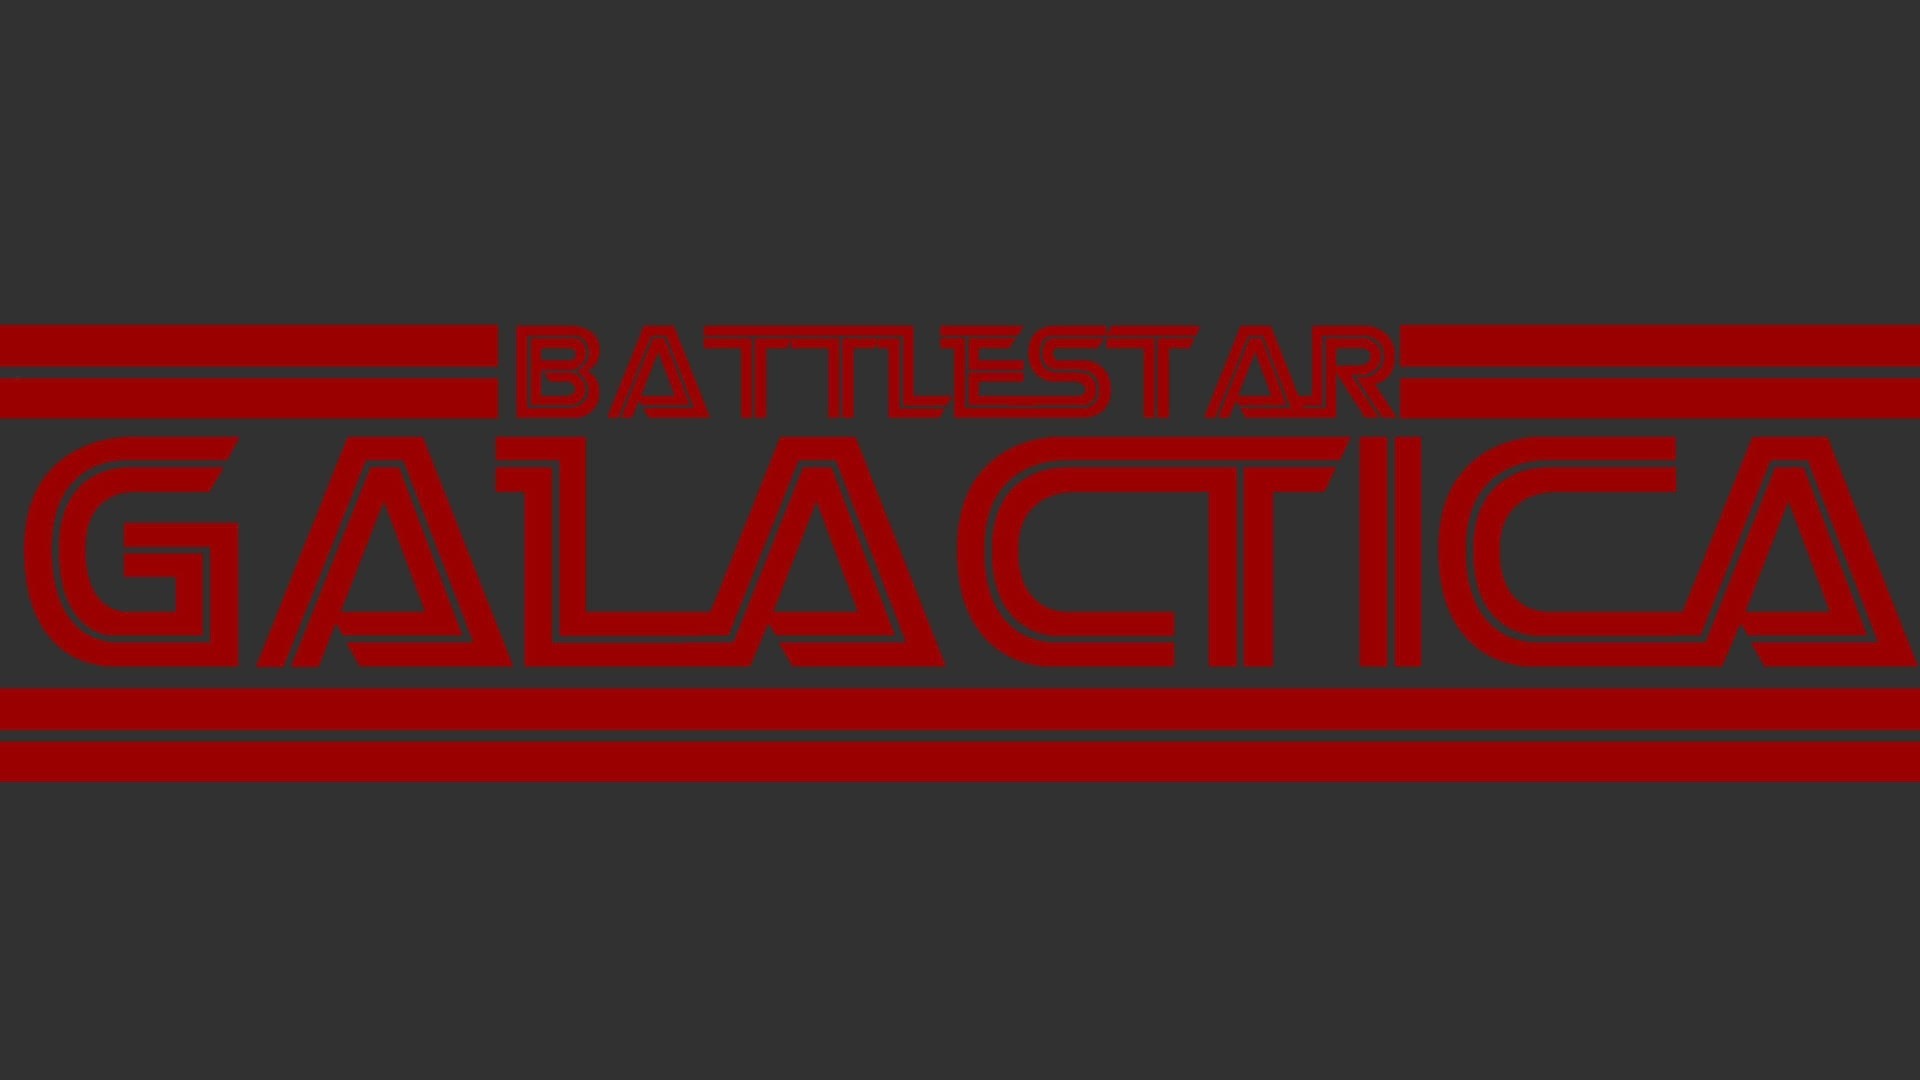 Widescreen wallpaper battlestar galactica 1978